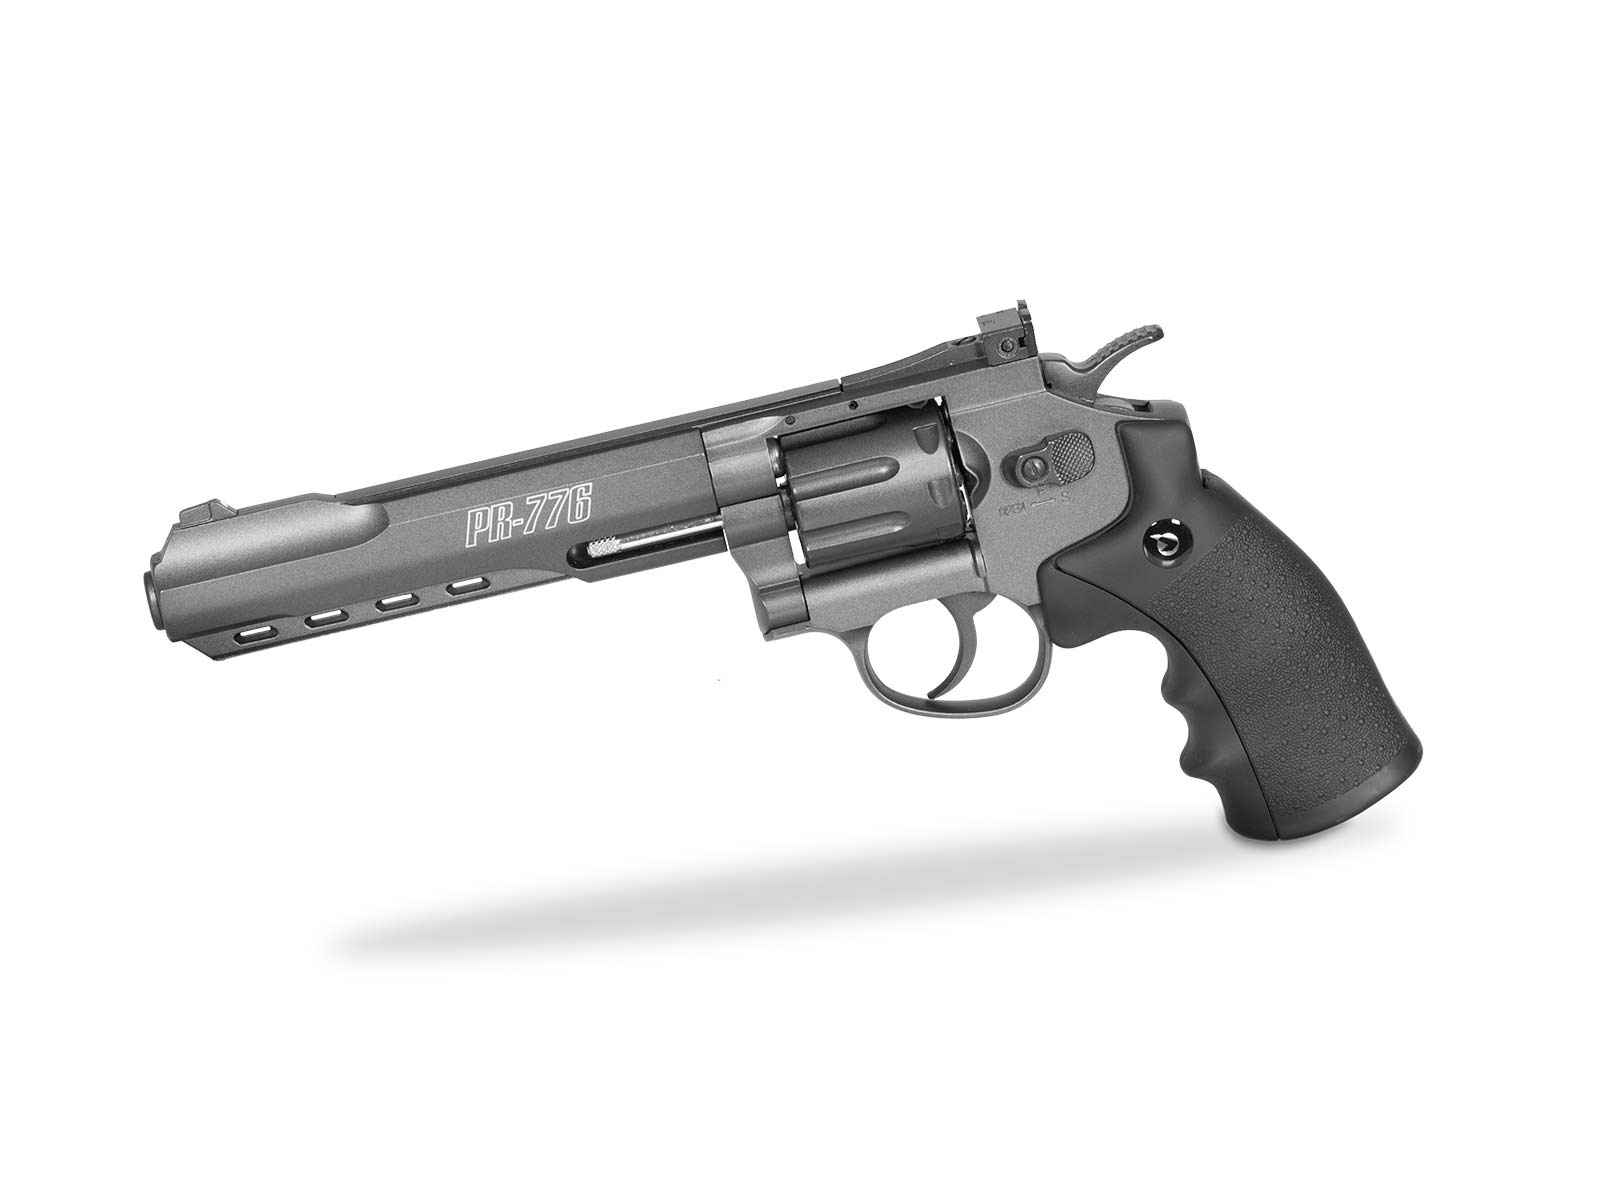 PR-776 revolver